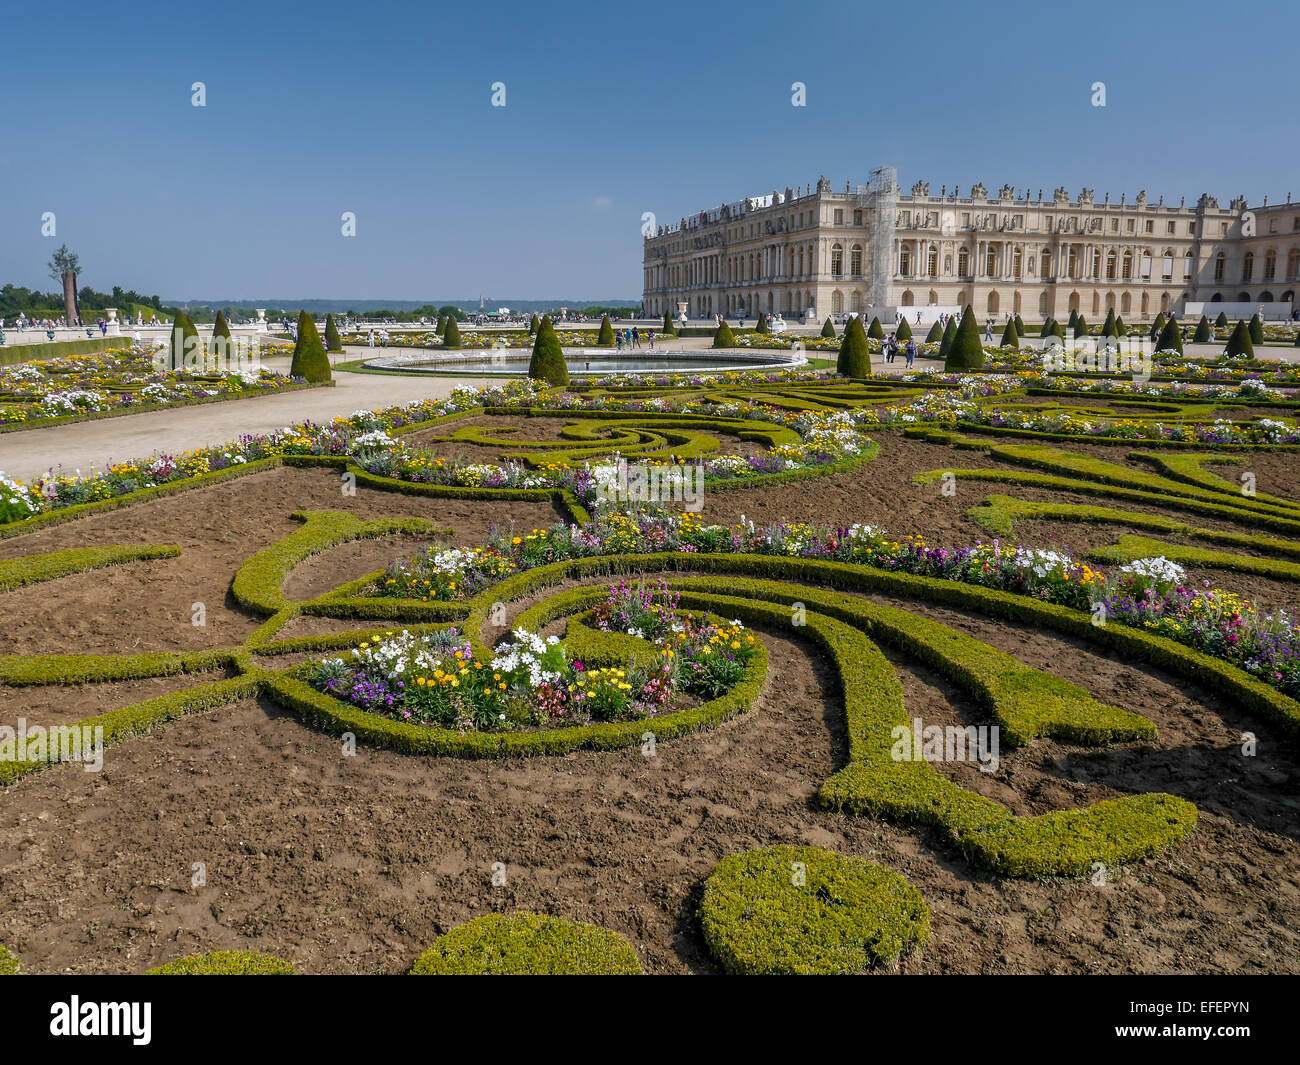 Plaqués parterre dans le jardin de Versailles Palais de Versailles avec en arrière-plan, Versailles, France Banque D'Images